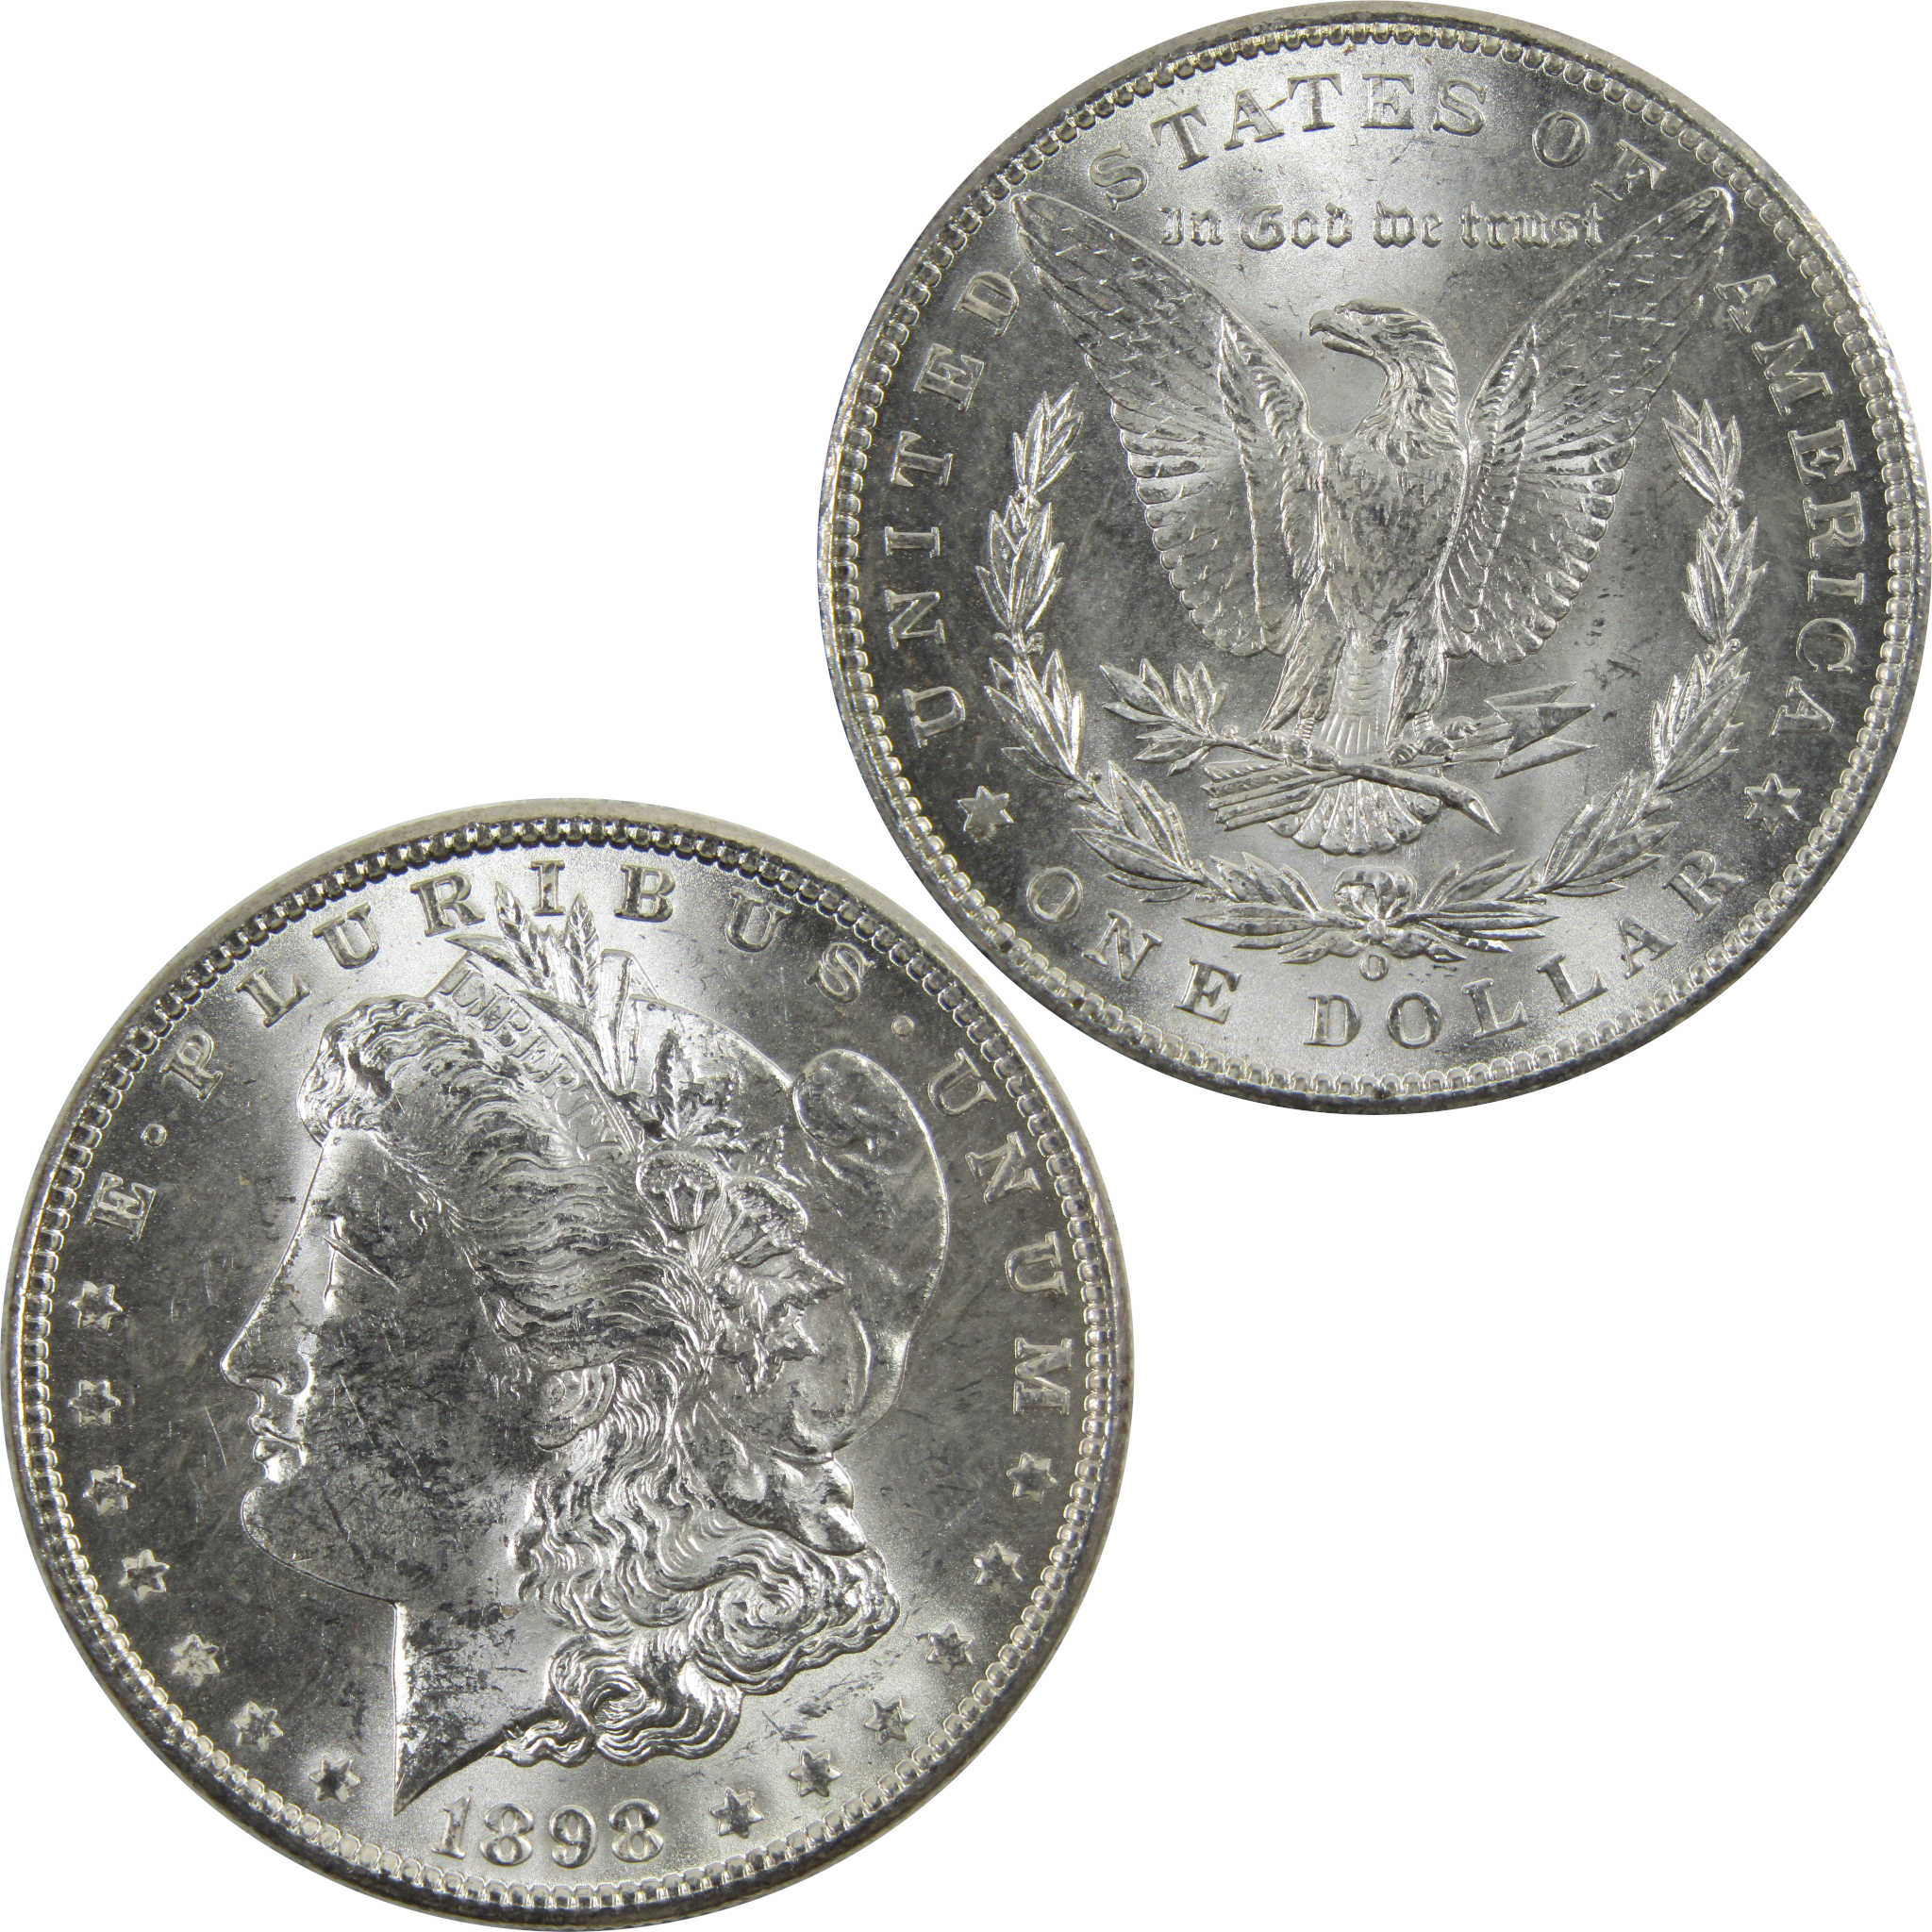 1898 O Morgan Dollar BU Uncirculated 90% Silver $1 Coin SKU:I5253 - Morgan coin - Morgan silver dollar - Morgan silver dollar for sale - Profile Coins &amp; Collectibles